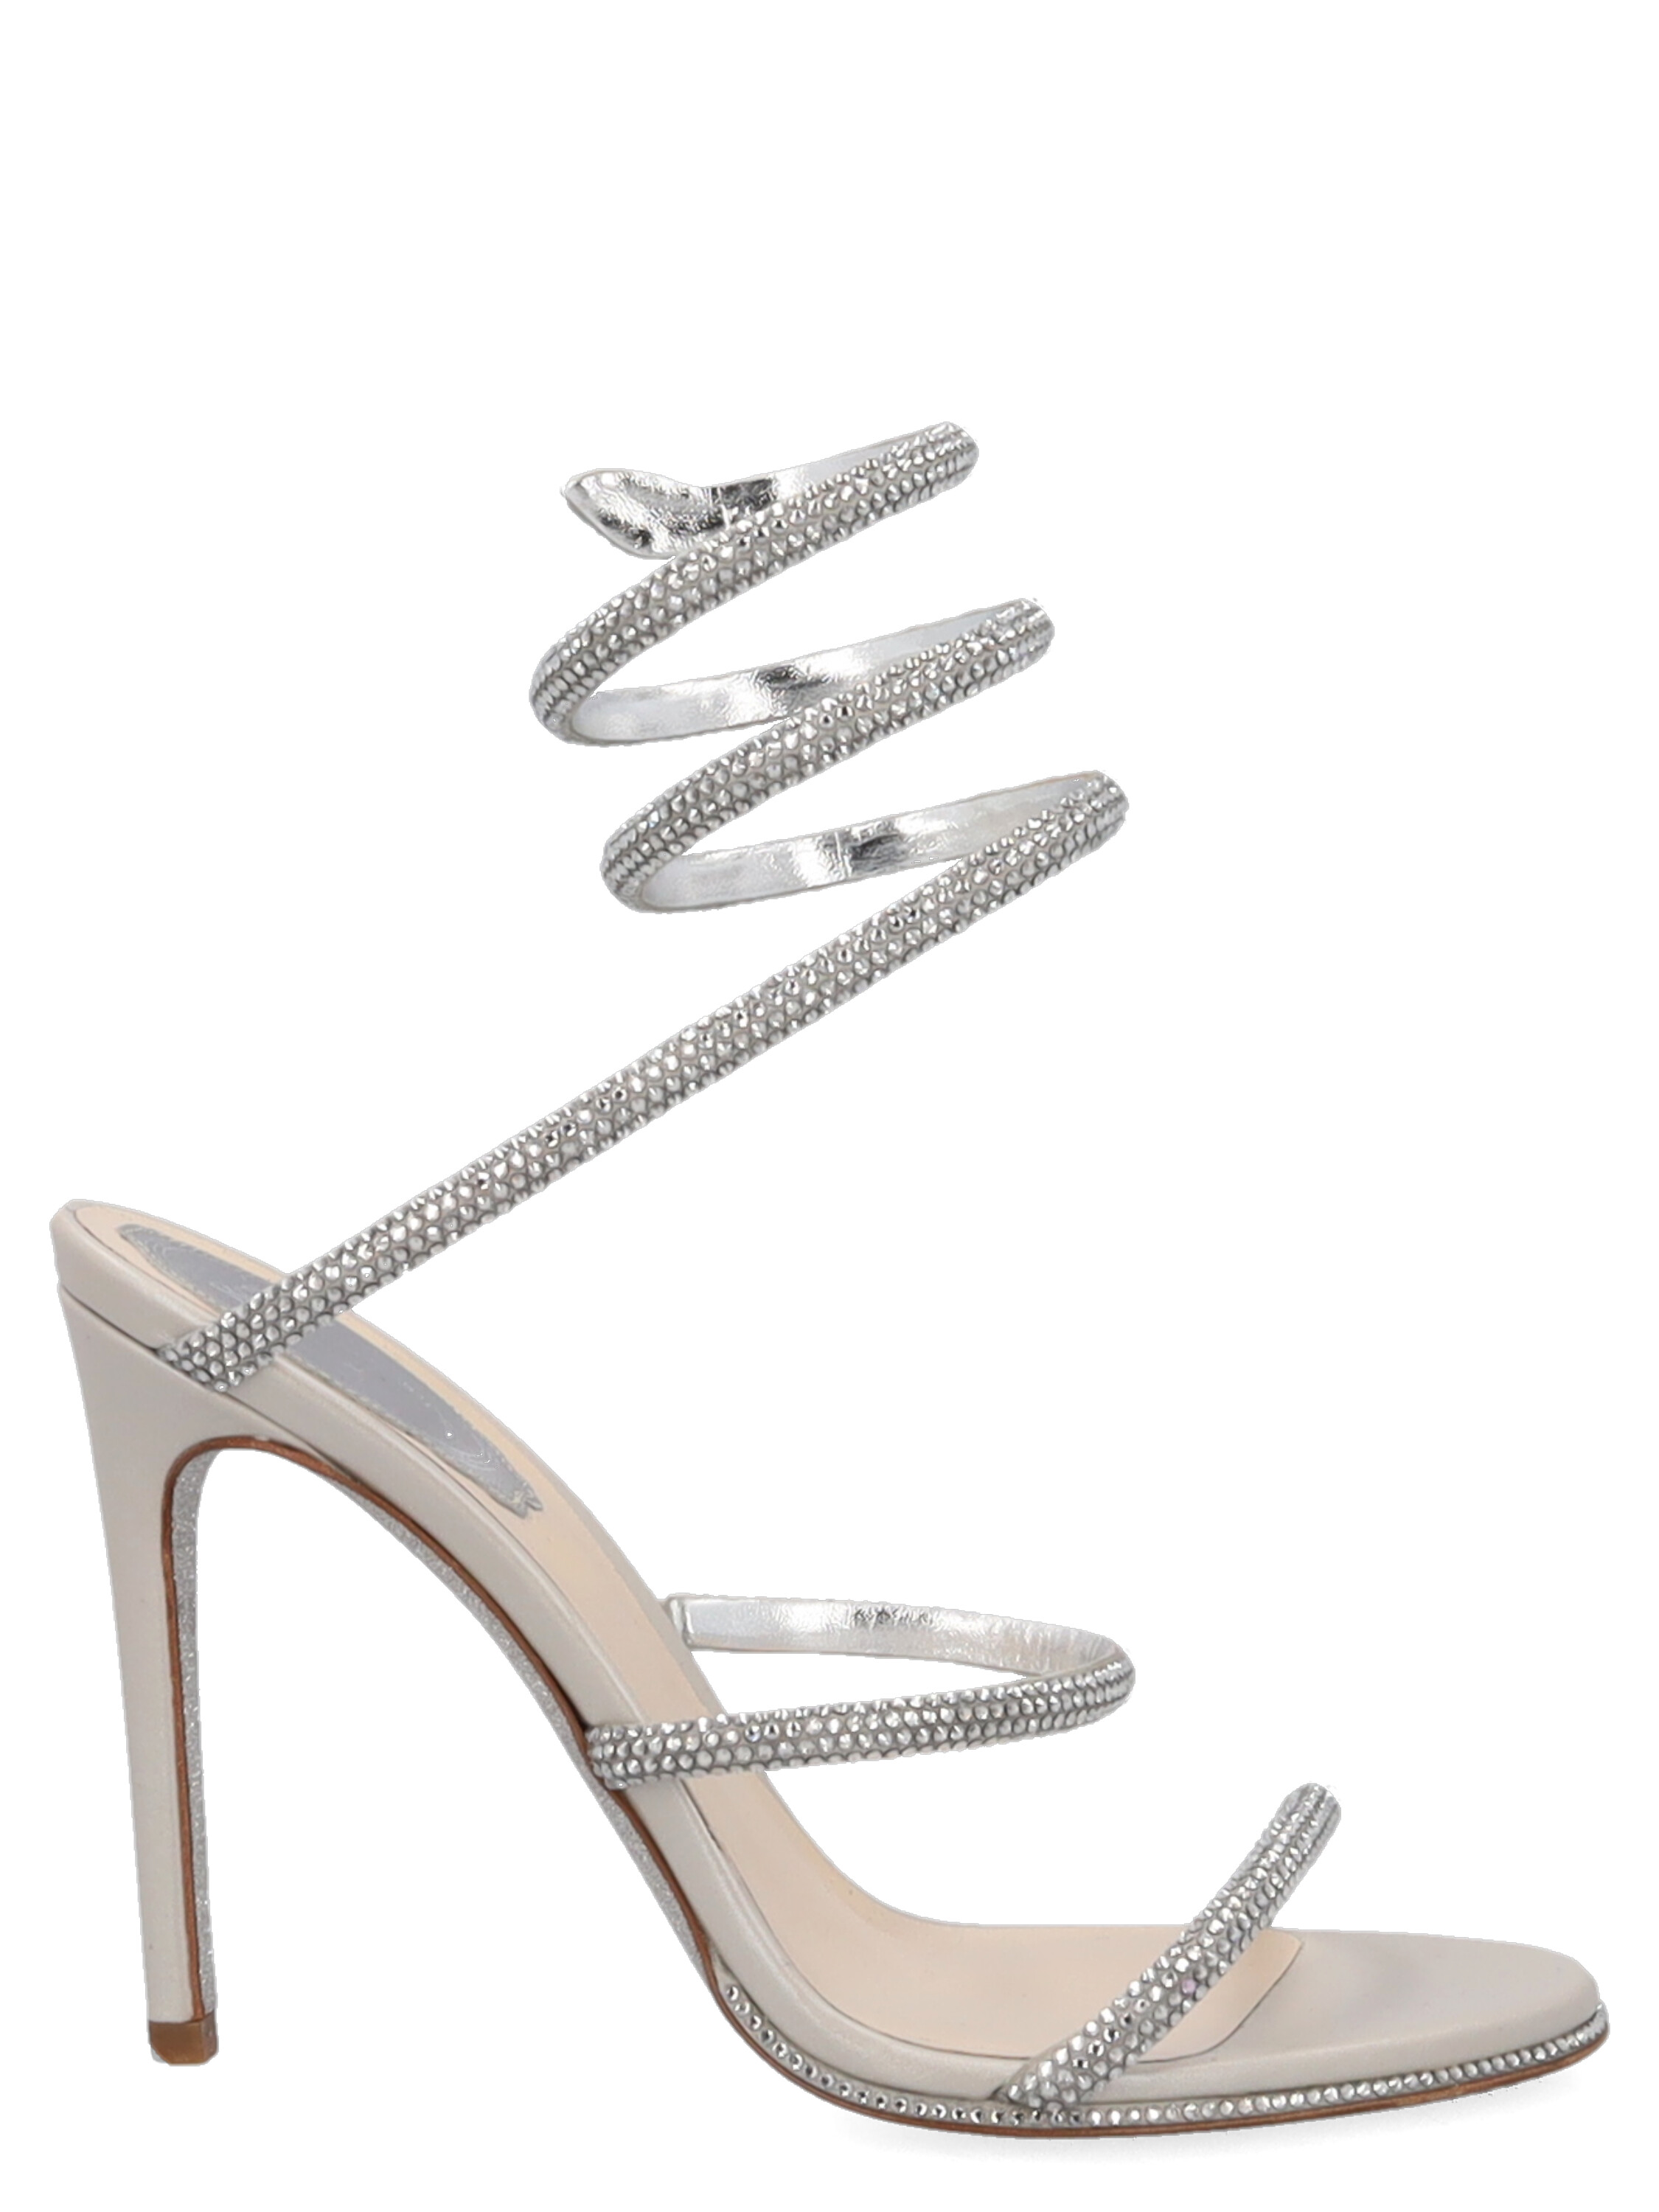 Pre-owned René Caovilla Women's Sandals - Rene Caovilla - In Silver It 36